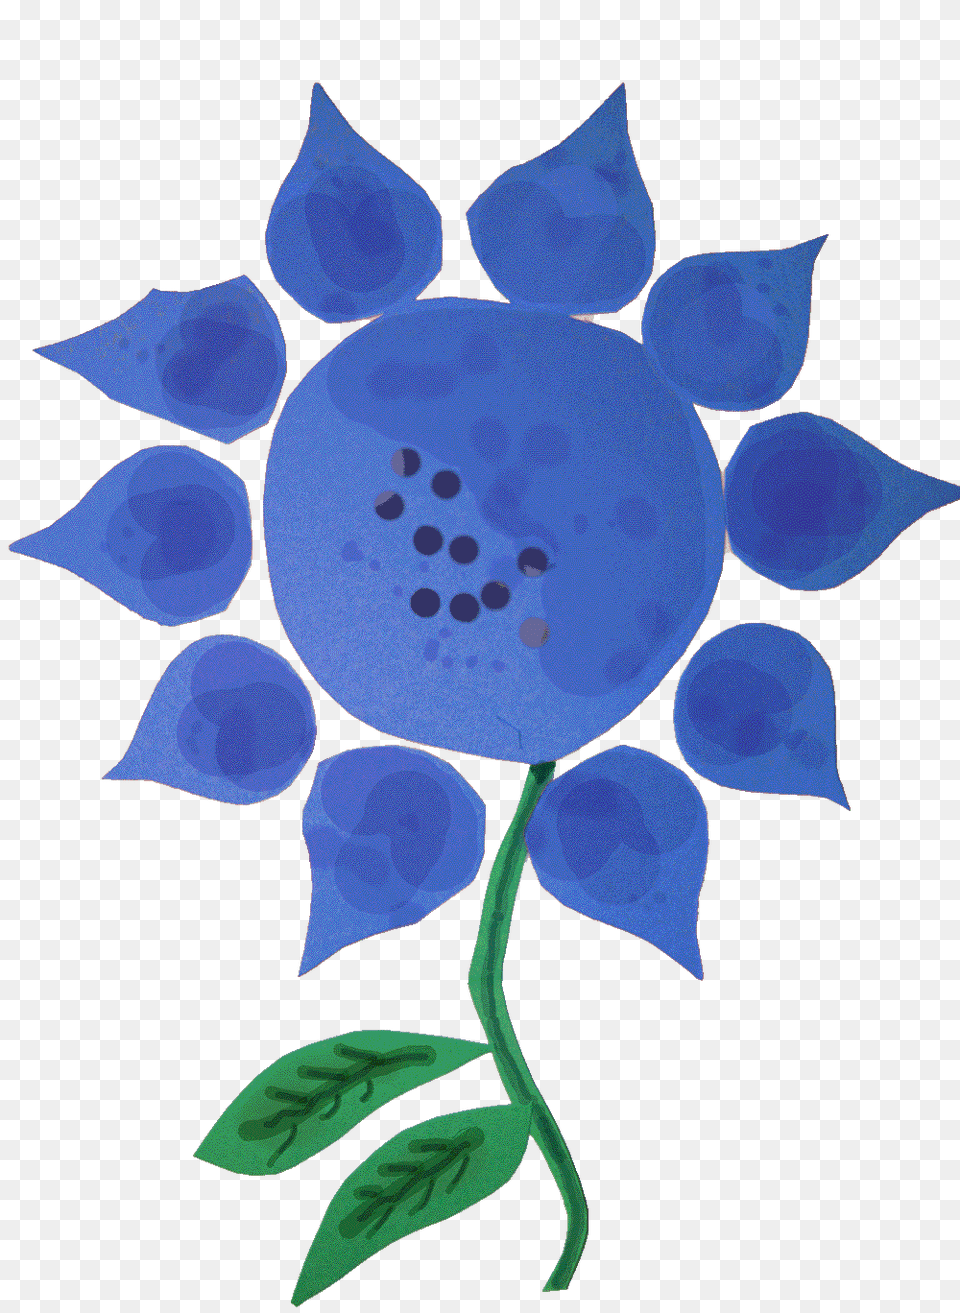 Blue Flower, Leaf, Plant, Pattern, Art Png Image